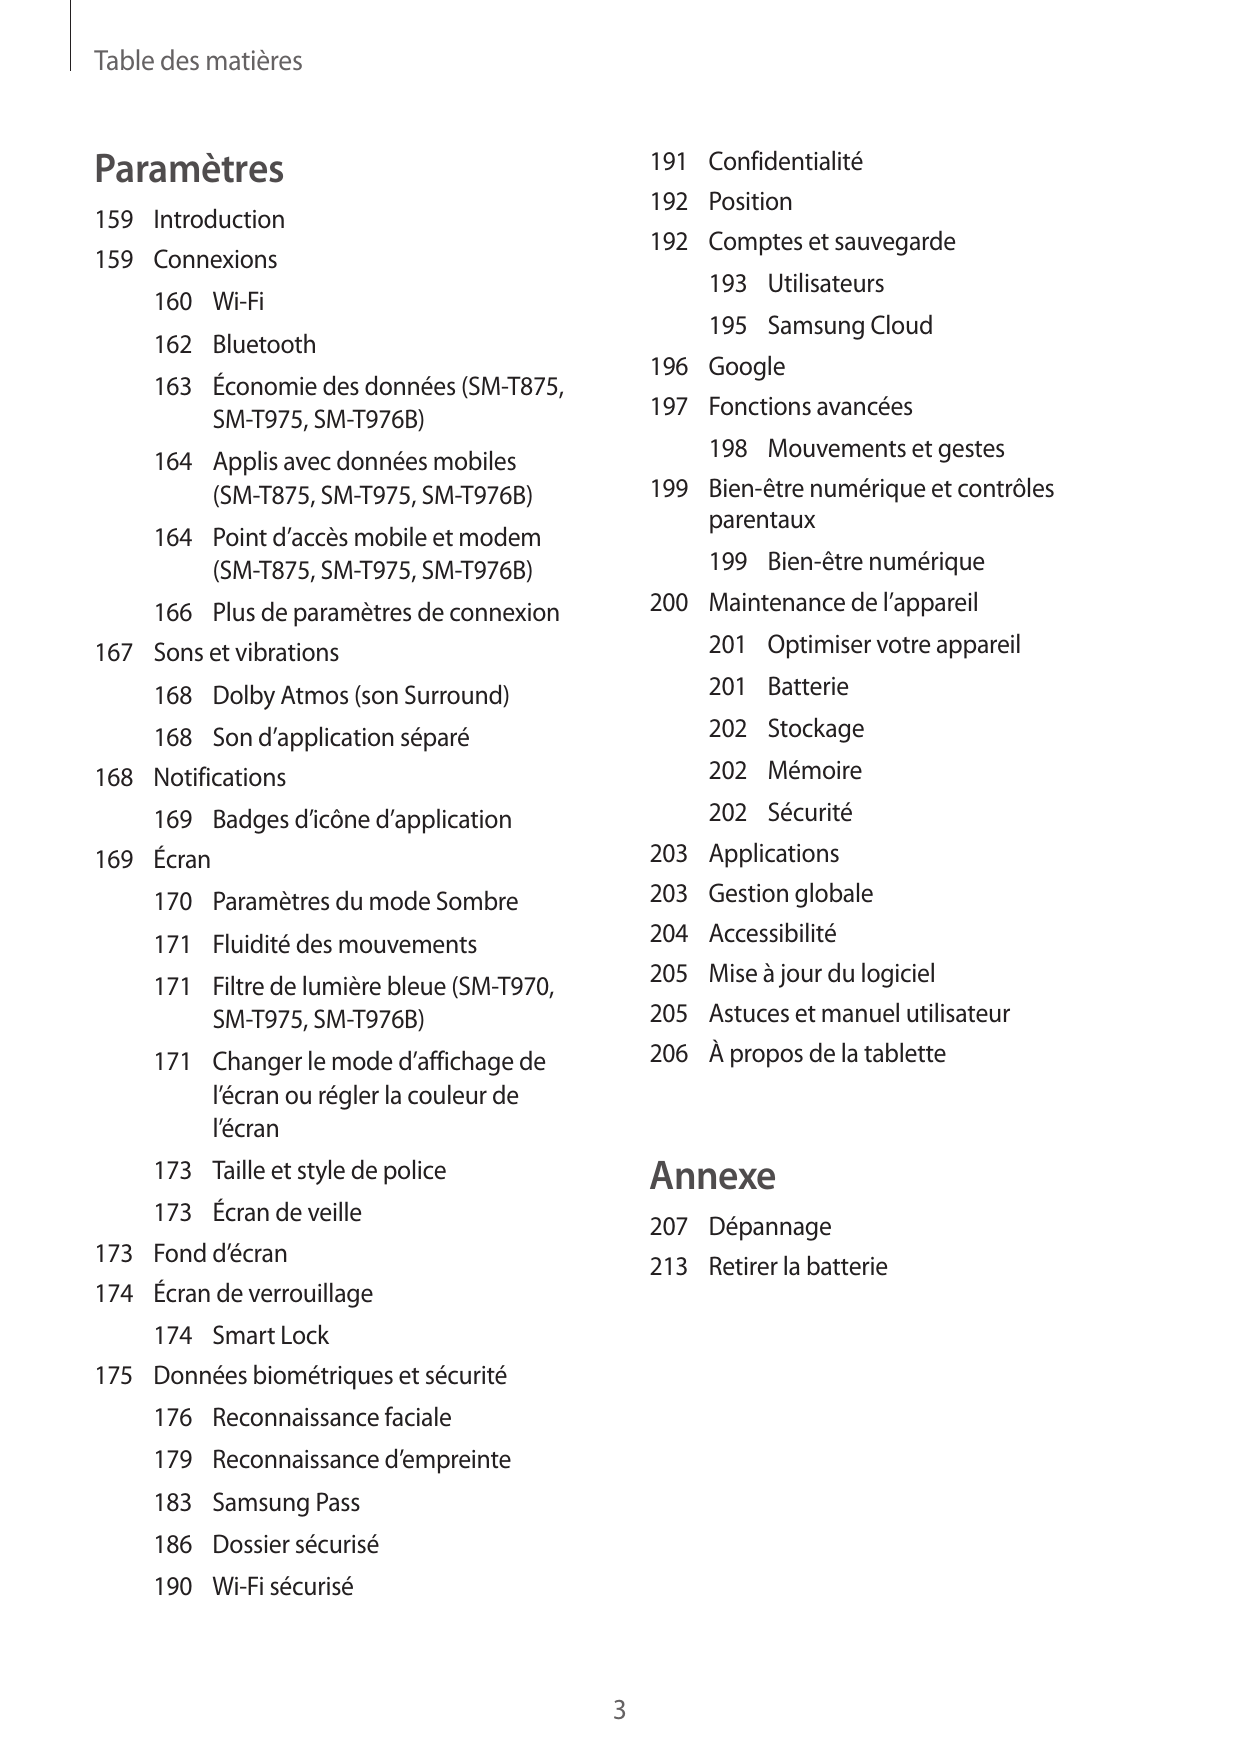 Table des matièresParamètres191Confidentialité192Position192 Comptes et sauvegarde159Introduction159Connexions193Utilisateurs160